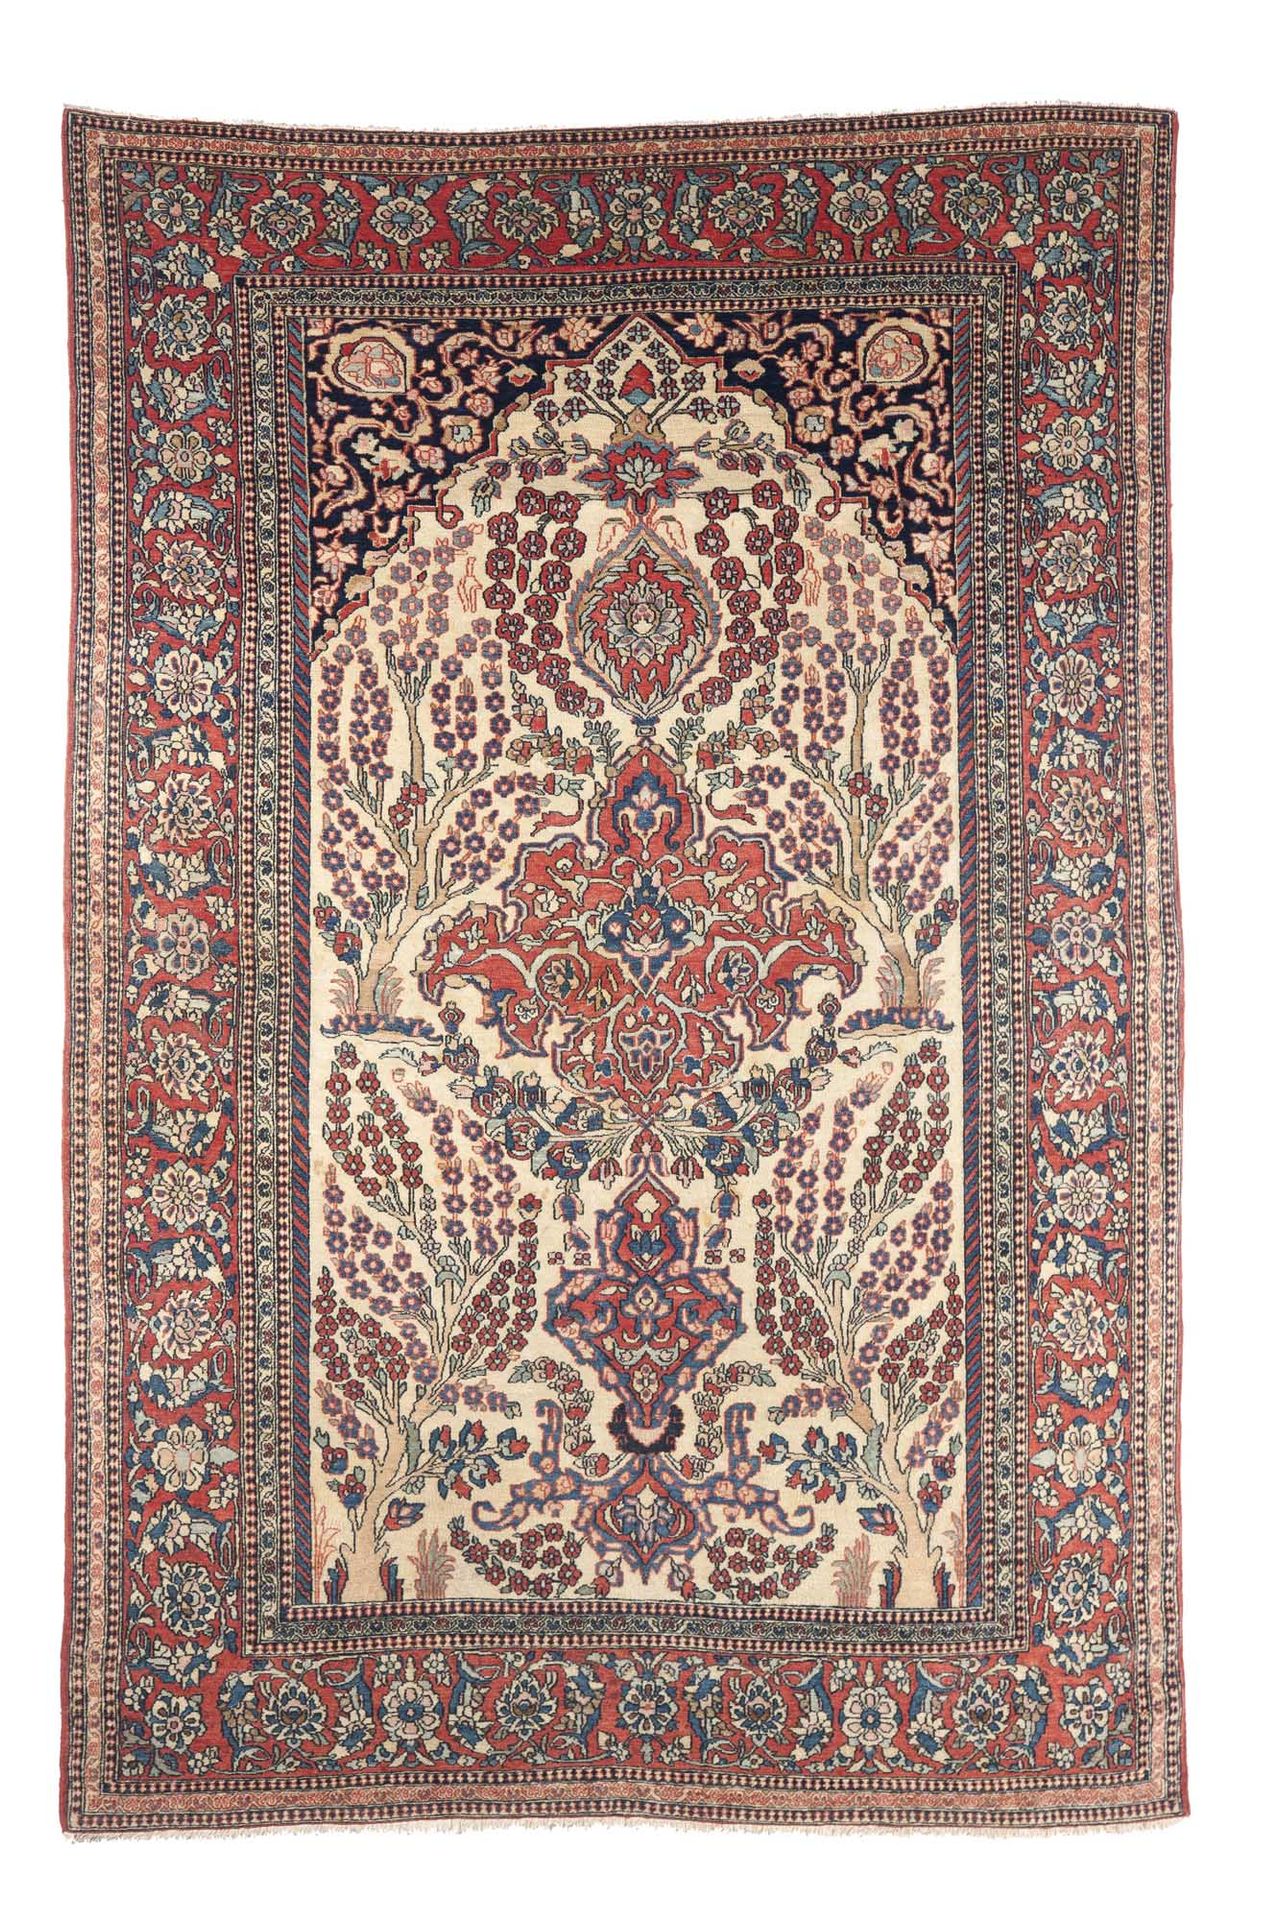 Null Tappeto ISPAHAN (Persia), fine XIX secolo

Dimensioni: 205 x 137cm

Caratte&hellip;